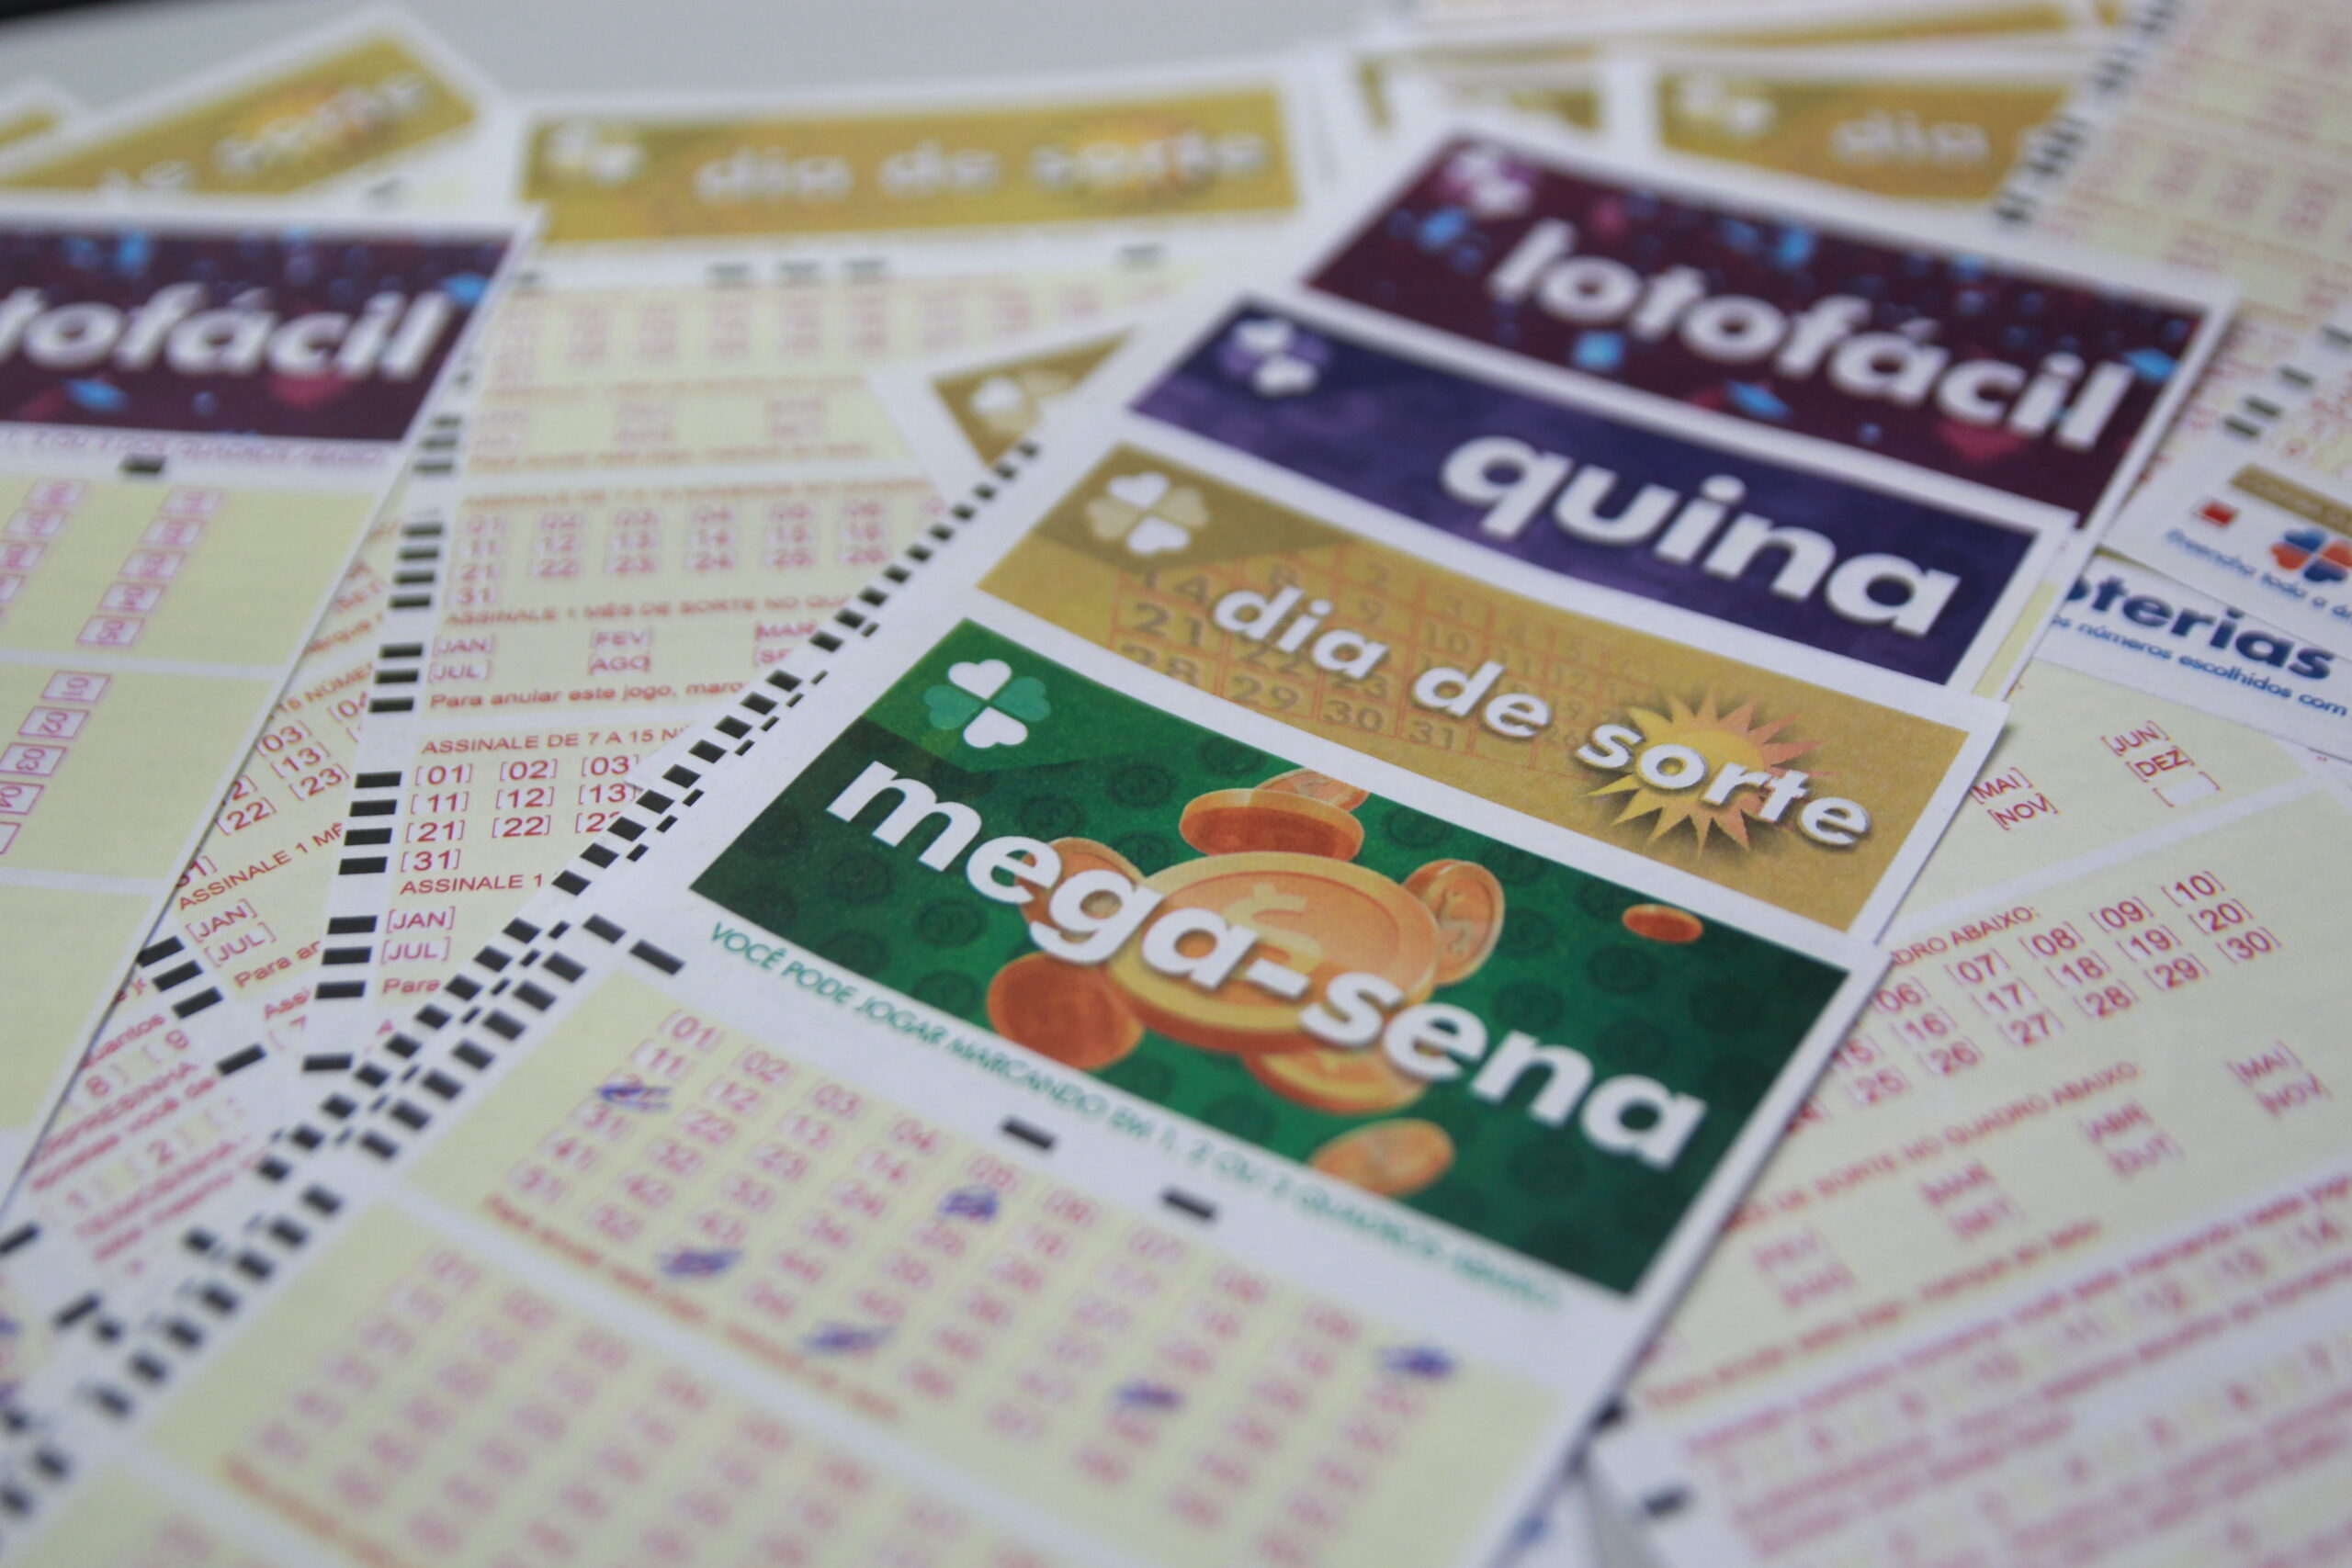 Loterias: confira o resultado da Mega-Sena 2426, Lotofácil 2366 e outros sorteios de sábado (06/11)